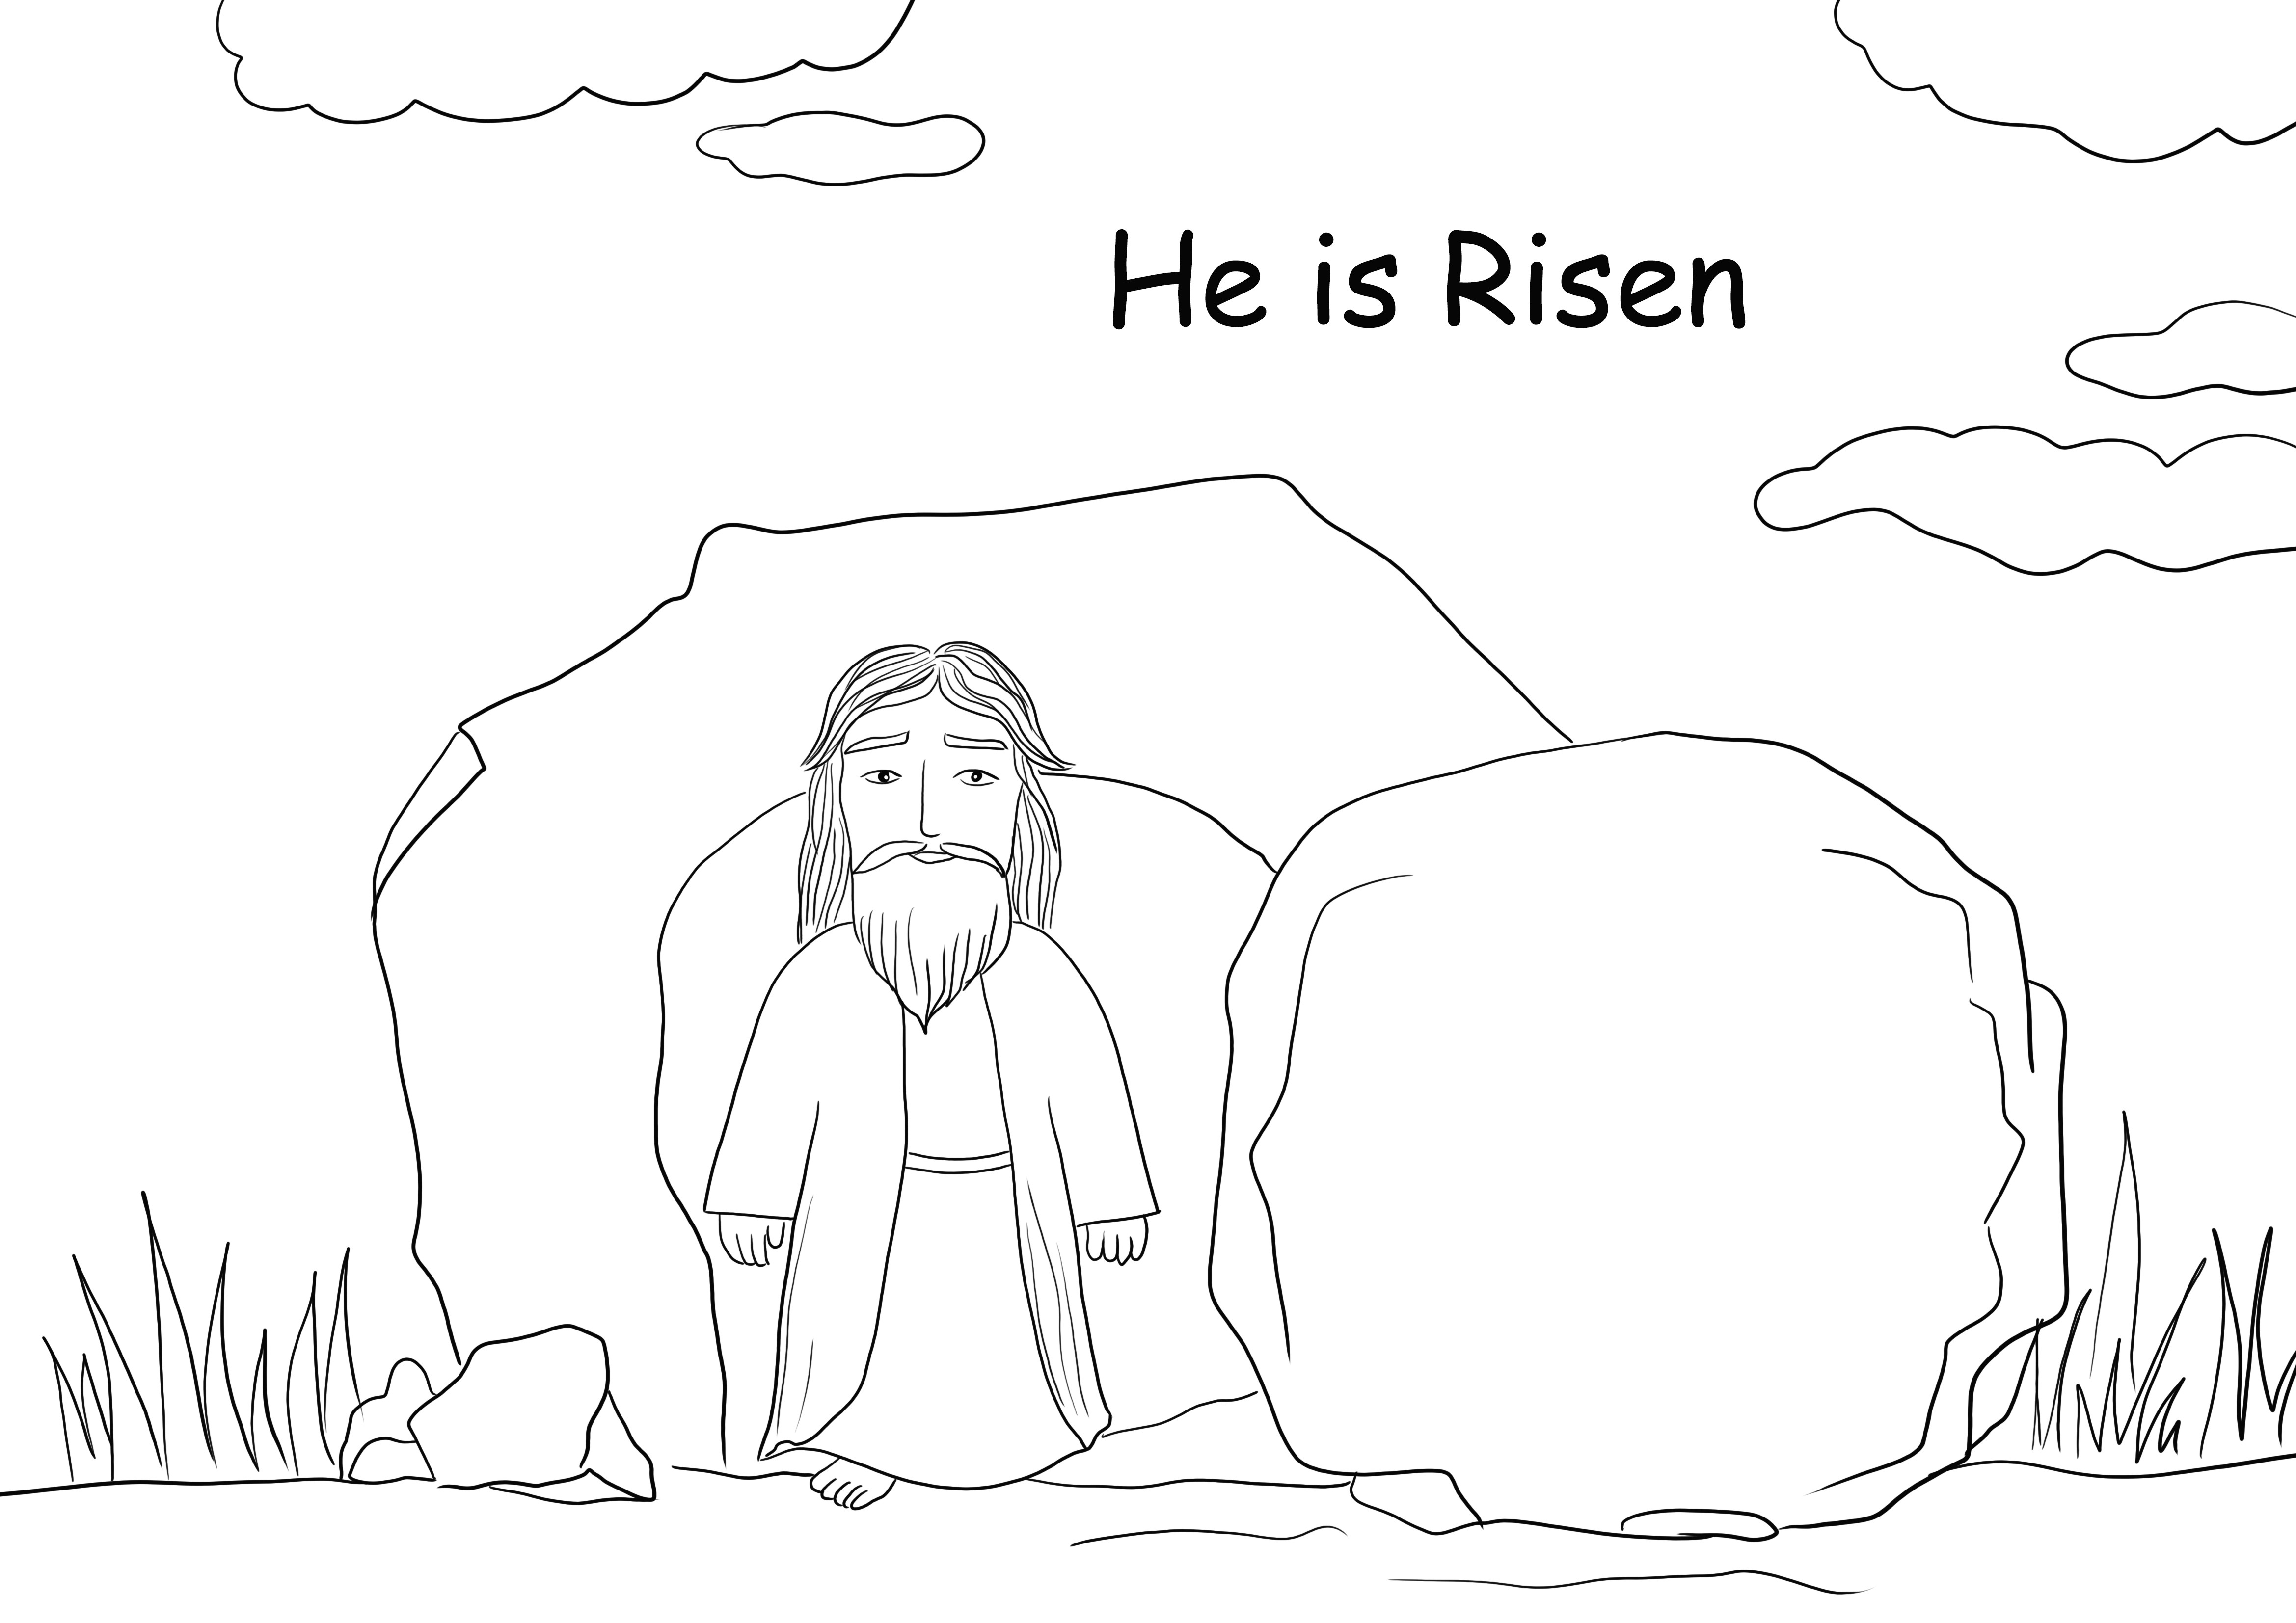 Jézus feltámadása színezőlap szabadon nyomtatható vagy elmenthető későbbre és színre